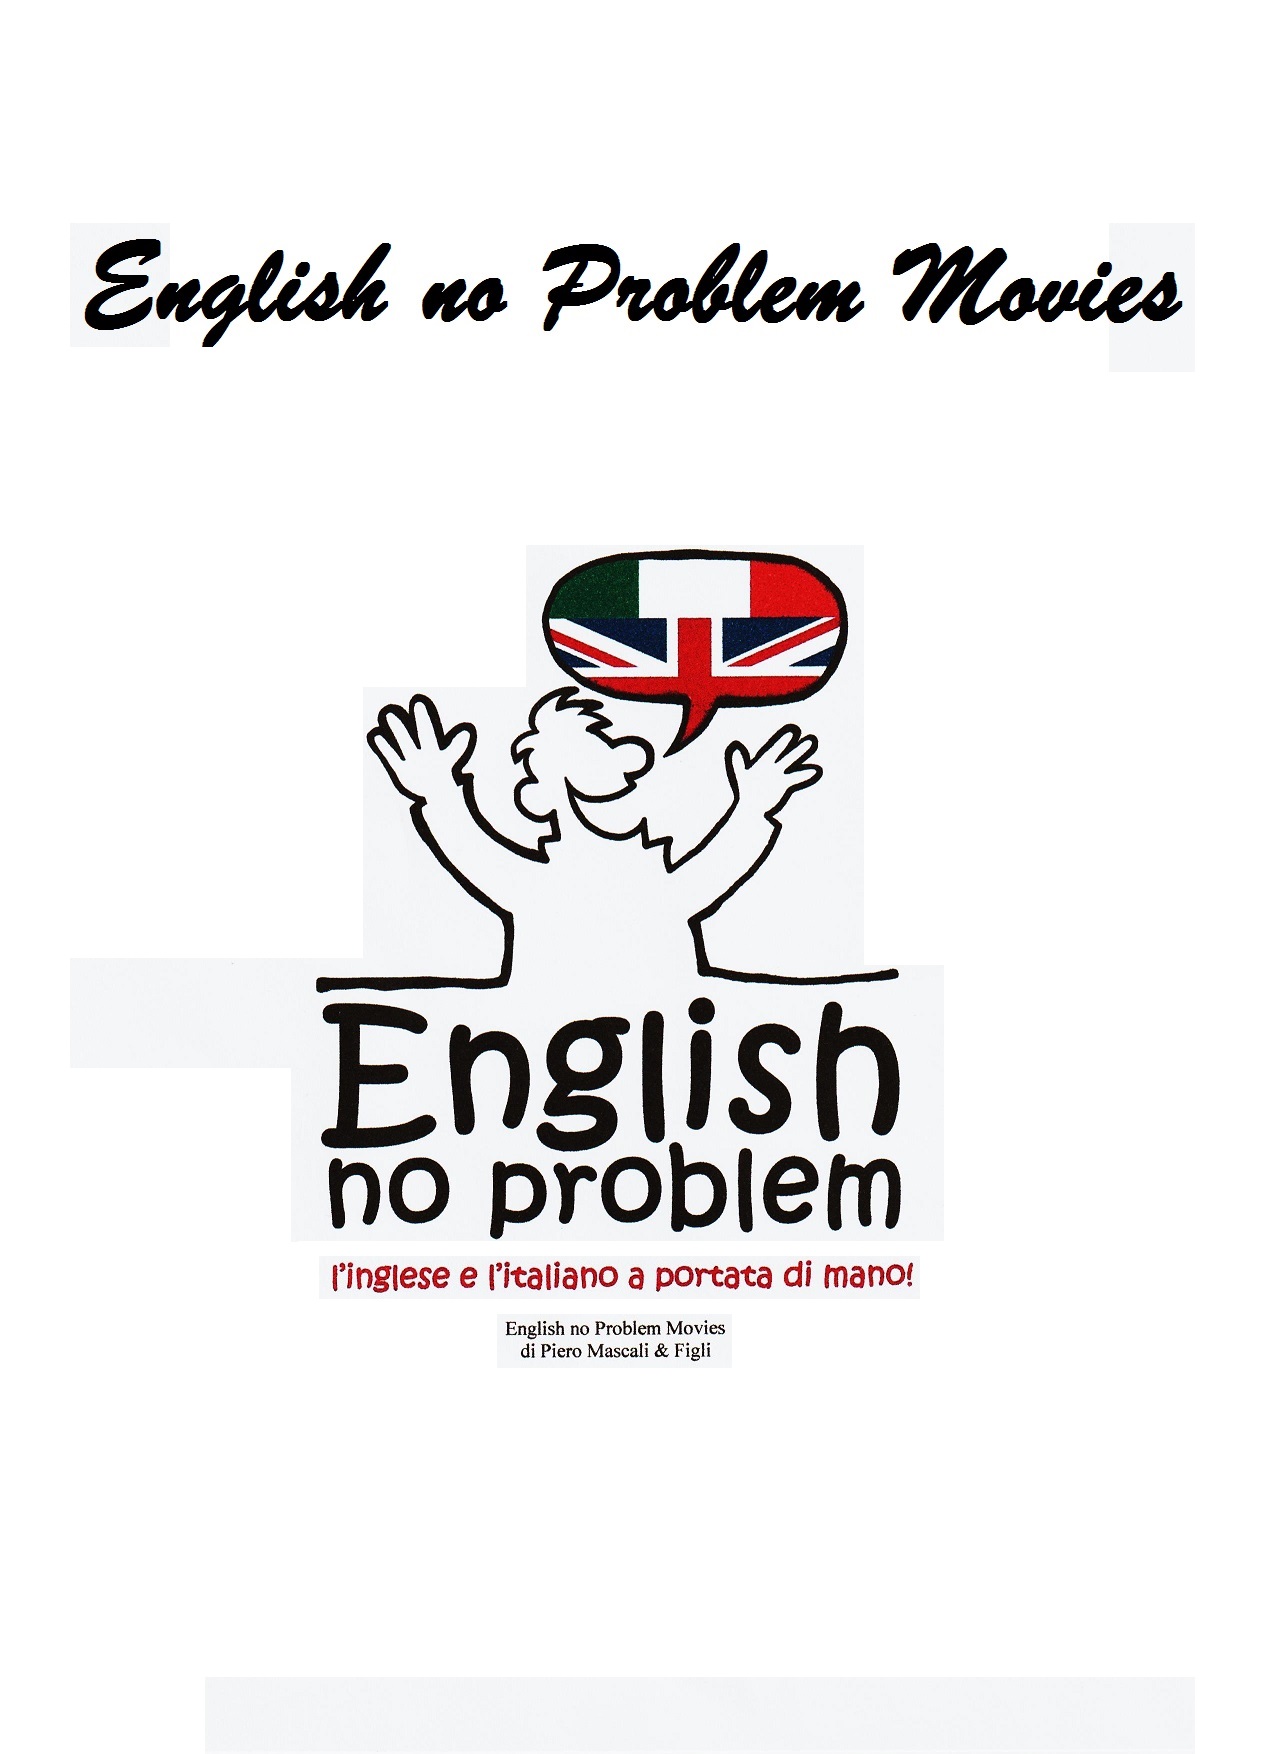 copertina english no problem movie